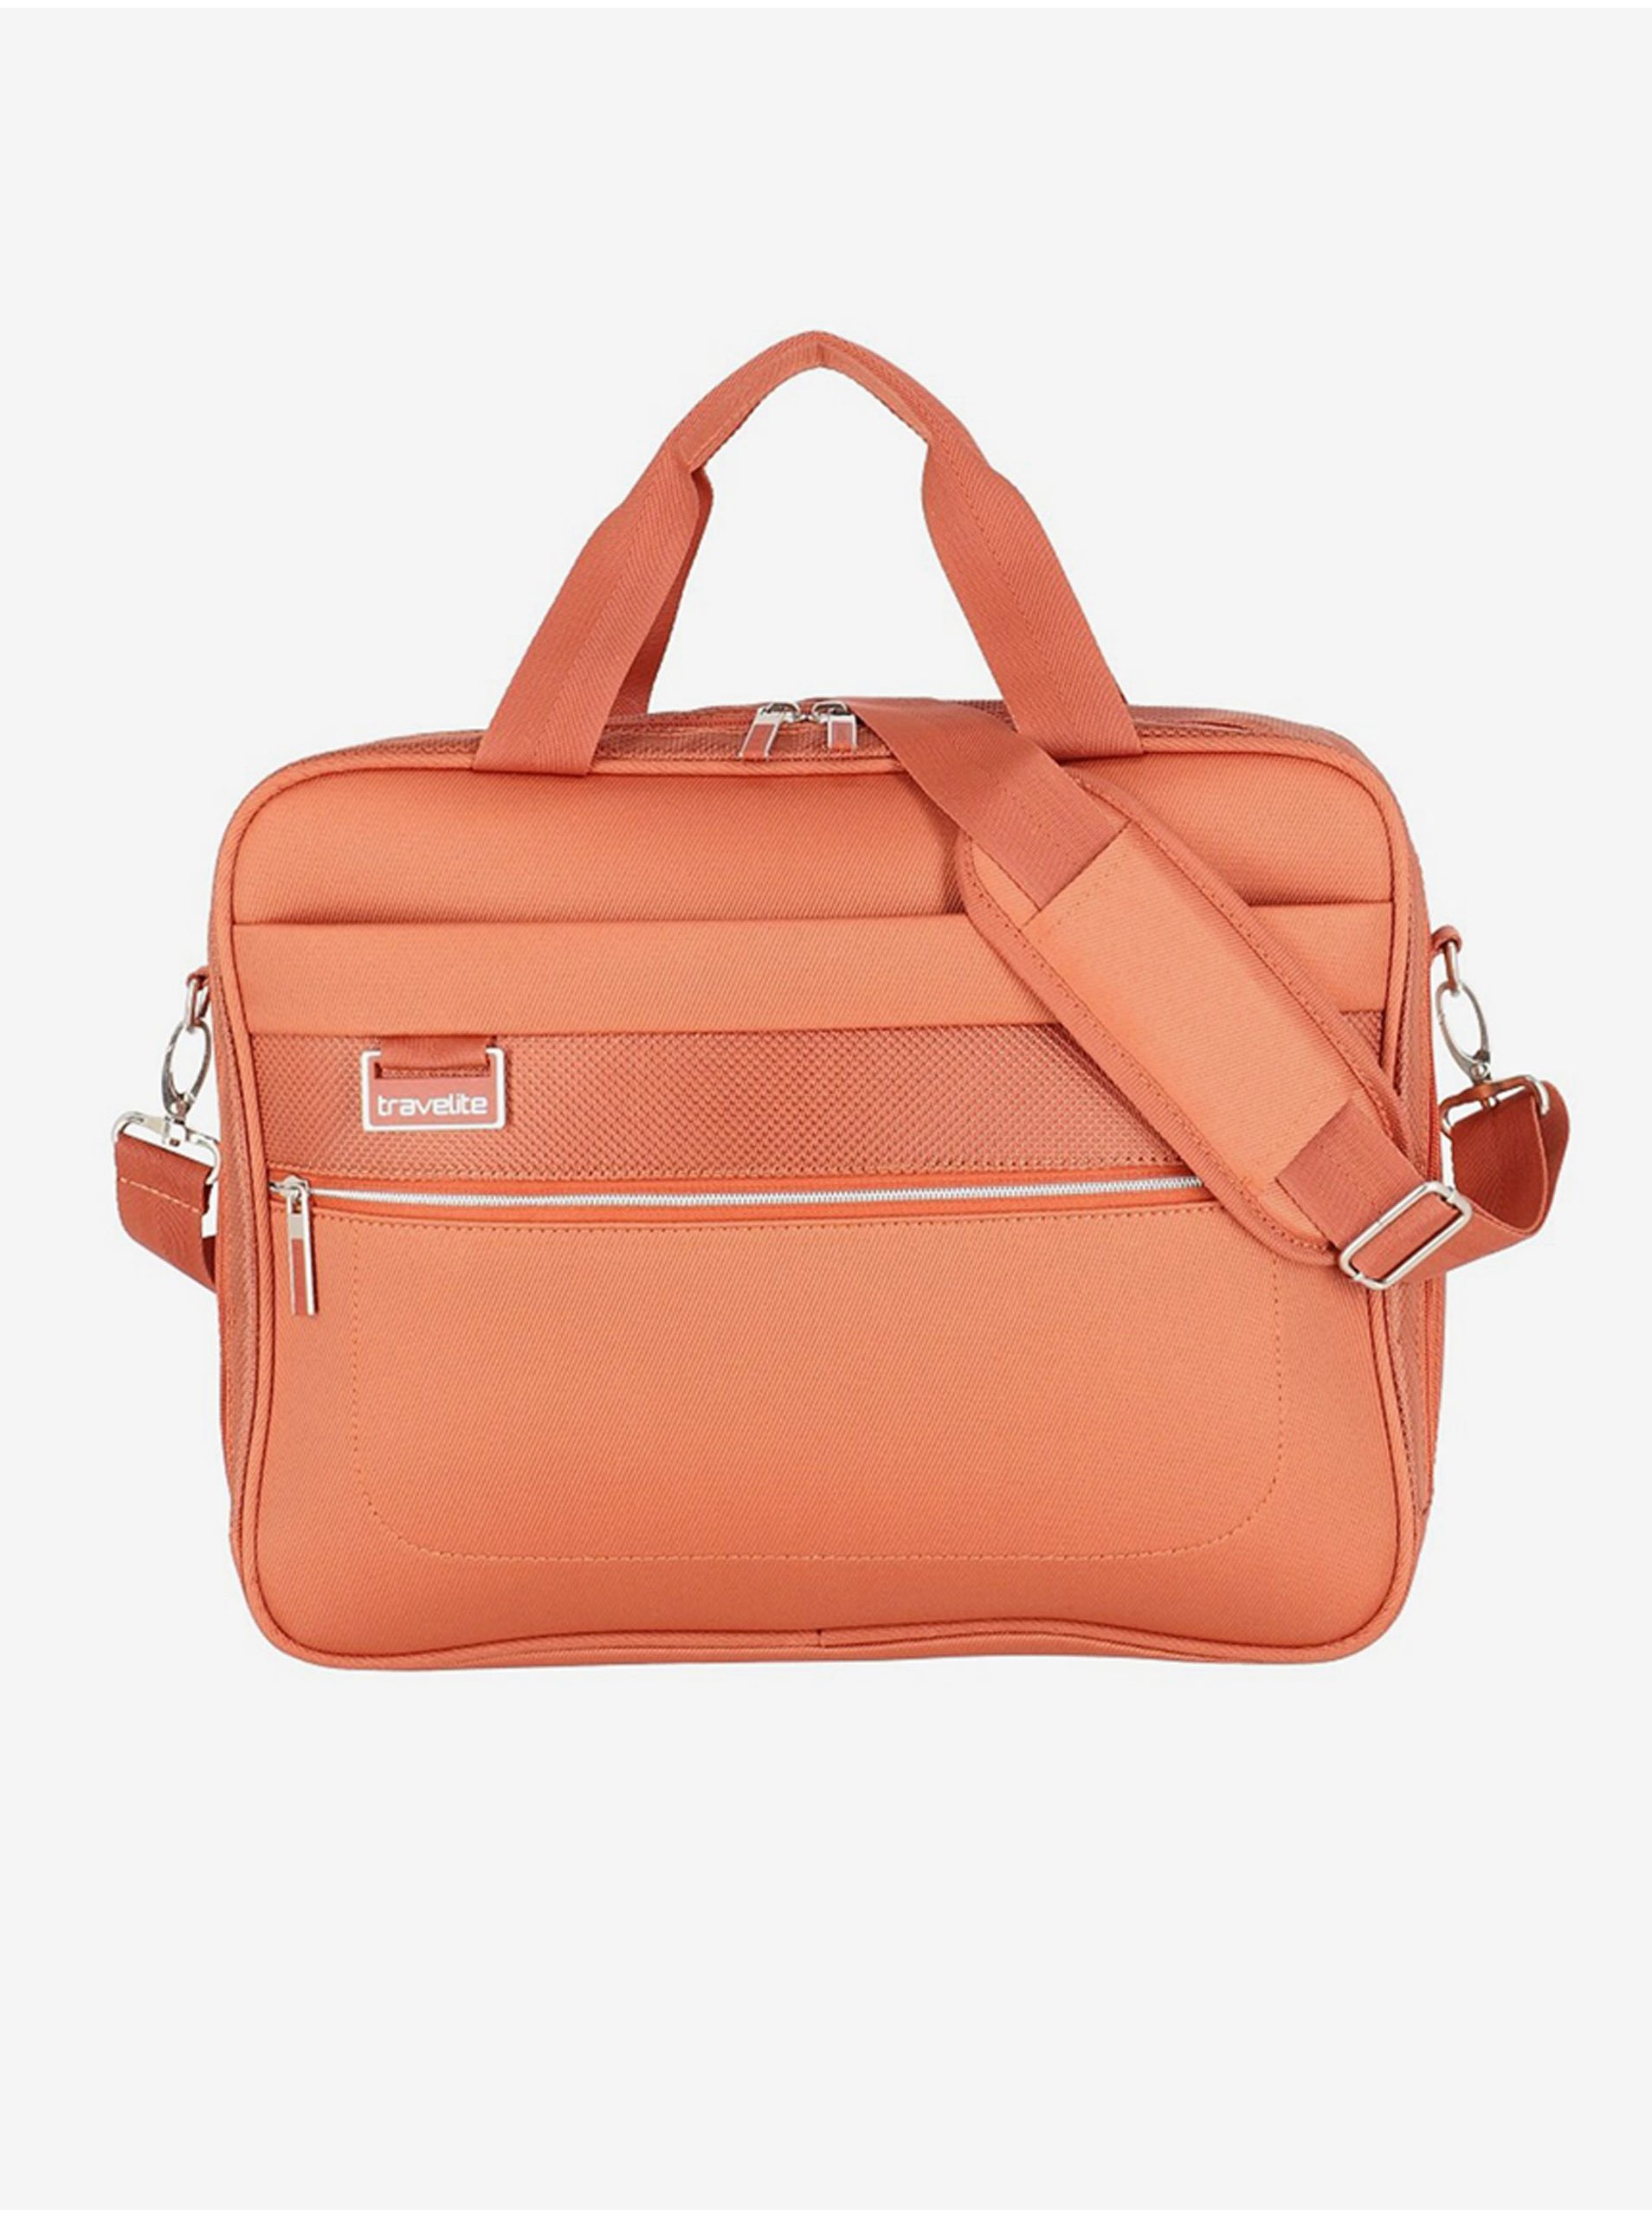 E-shop Oranžová cestovní taška Travelite Miigo Board bag Copper/chutney